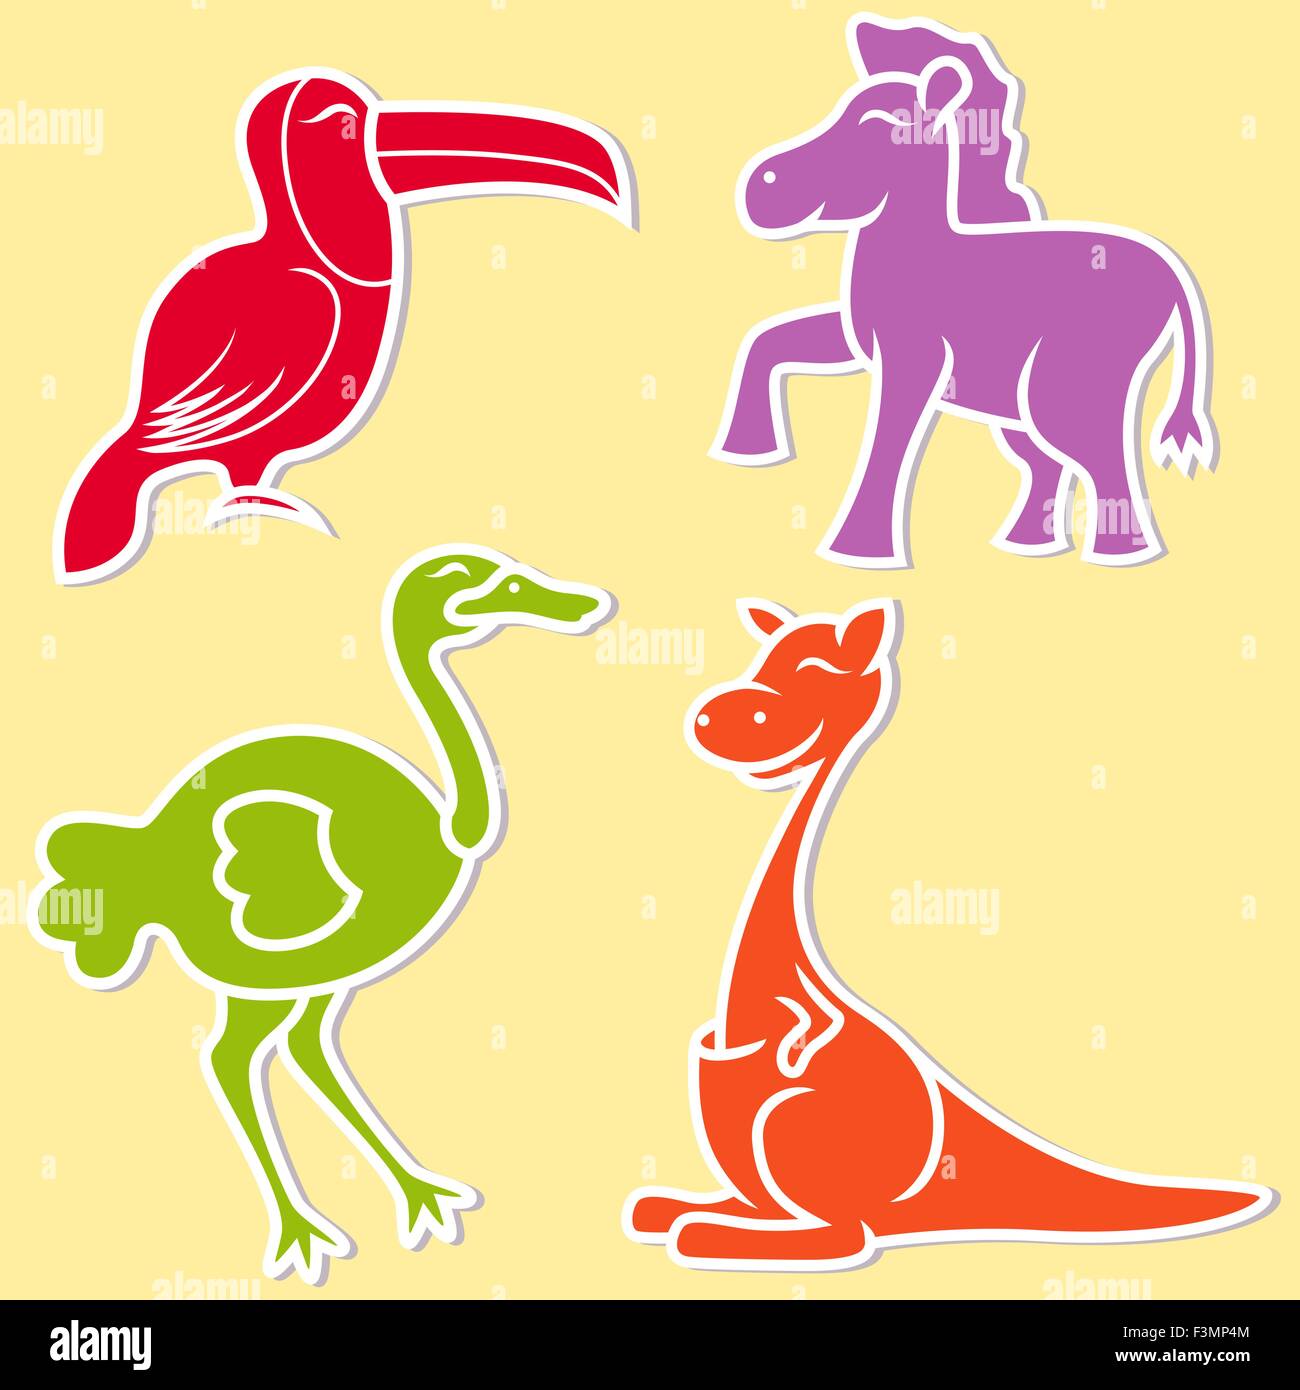 Tukan, Pony, Strauß und Känguruh auf gelben Hintergrund, Cartoon-flache Vektor-illustration Stock Vektor